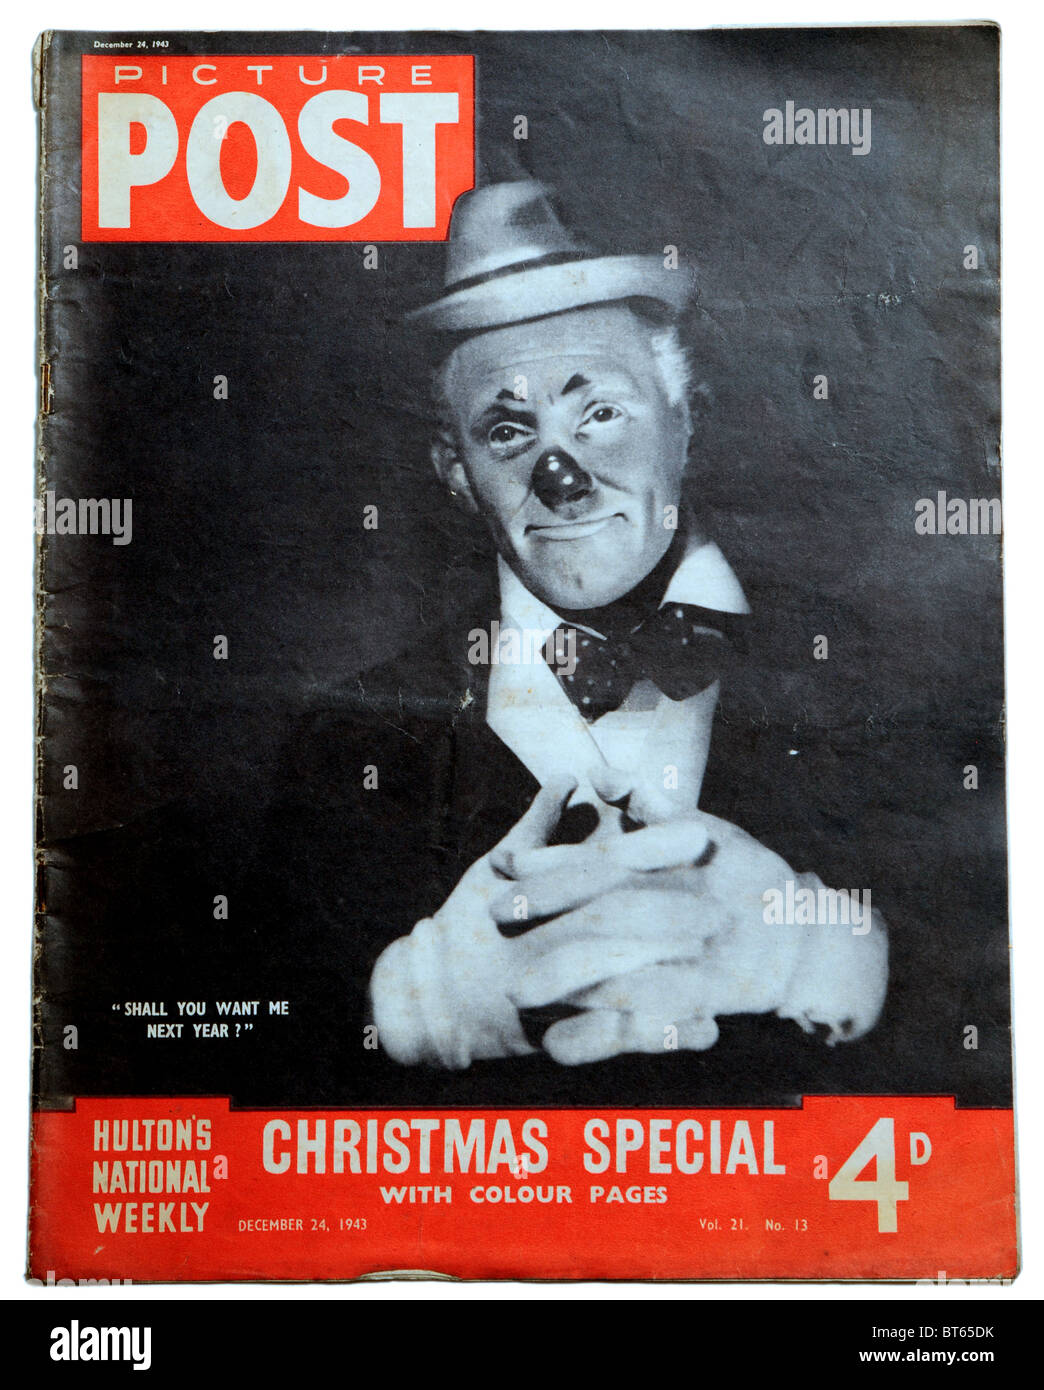 Tommy trinder clown attore comico naso rosso 24 dicembre 1943 Immagine Post photojournalistic prominente rivista pubblicata Regno Foto Stock